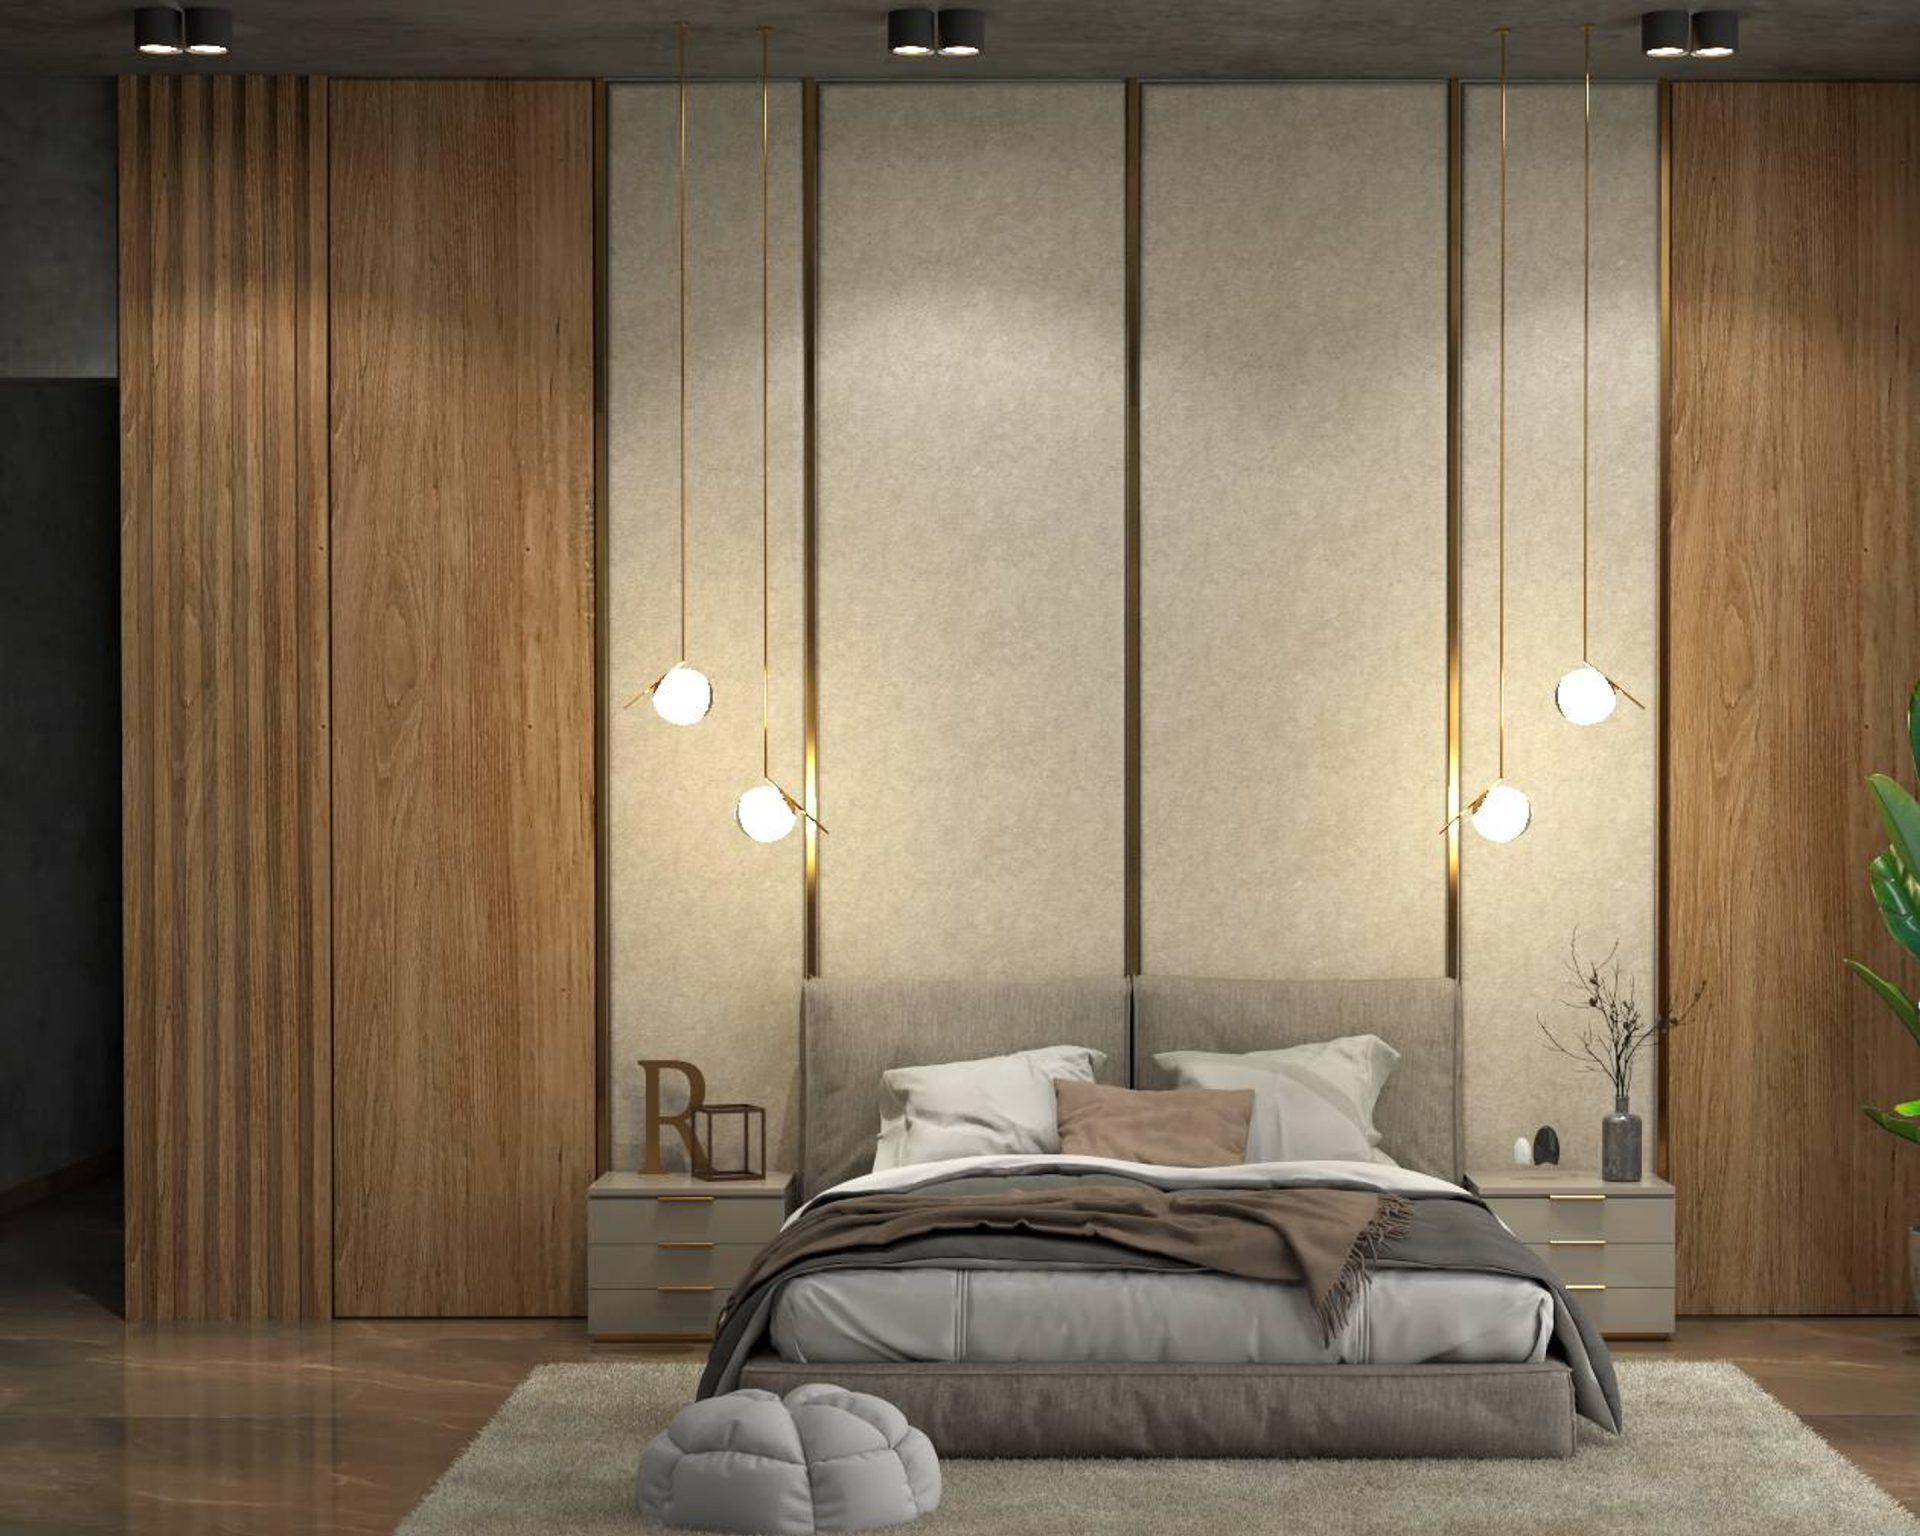 Luxury Bedroom Ideas